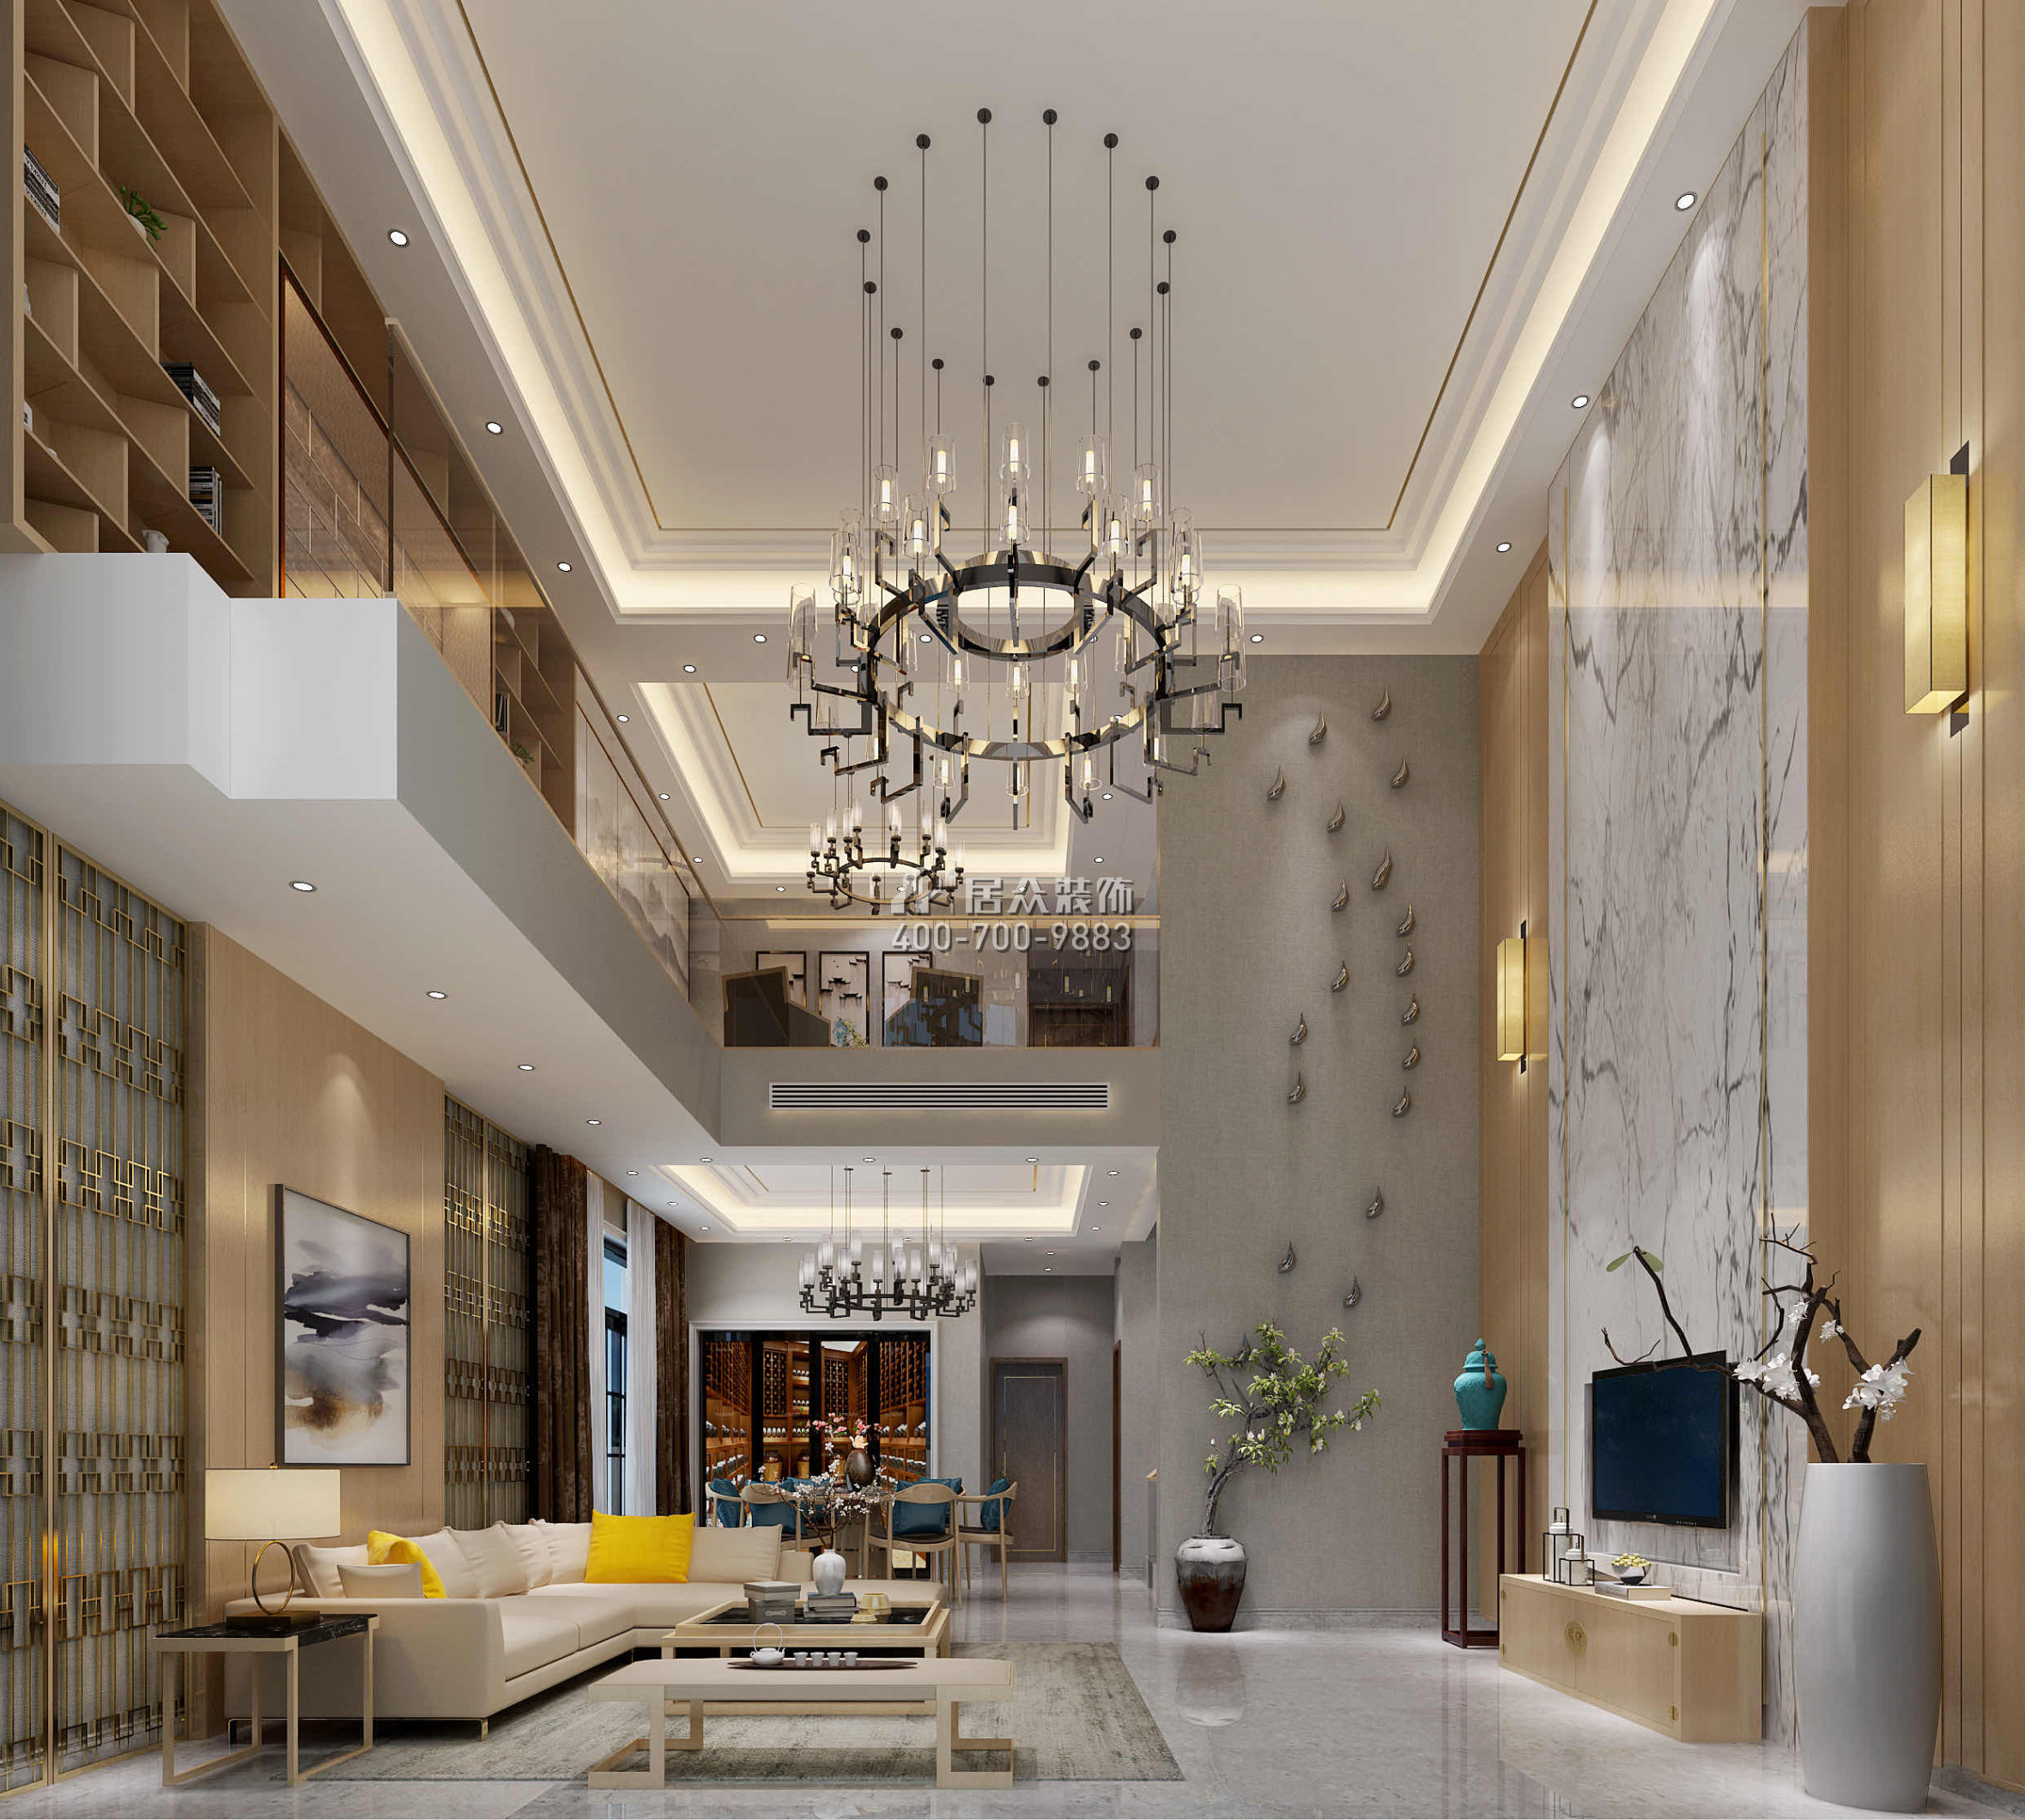 萬科棠樾450平方米中式風格別墅戶型客廳裝修效果圖